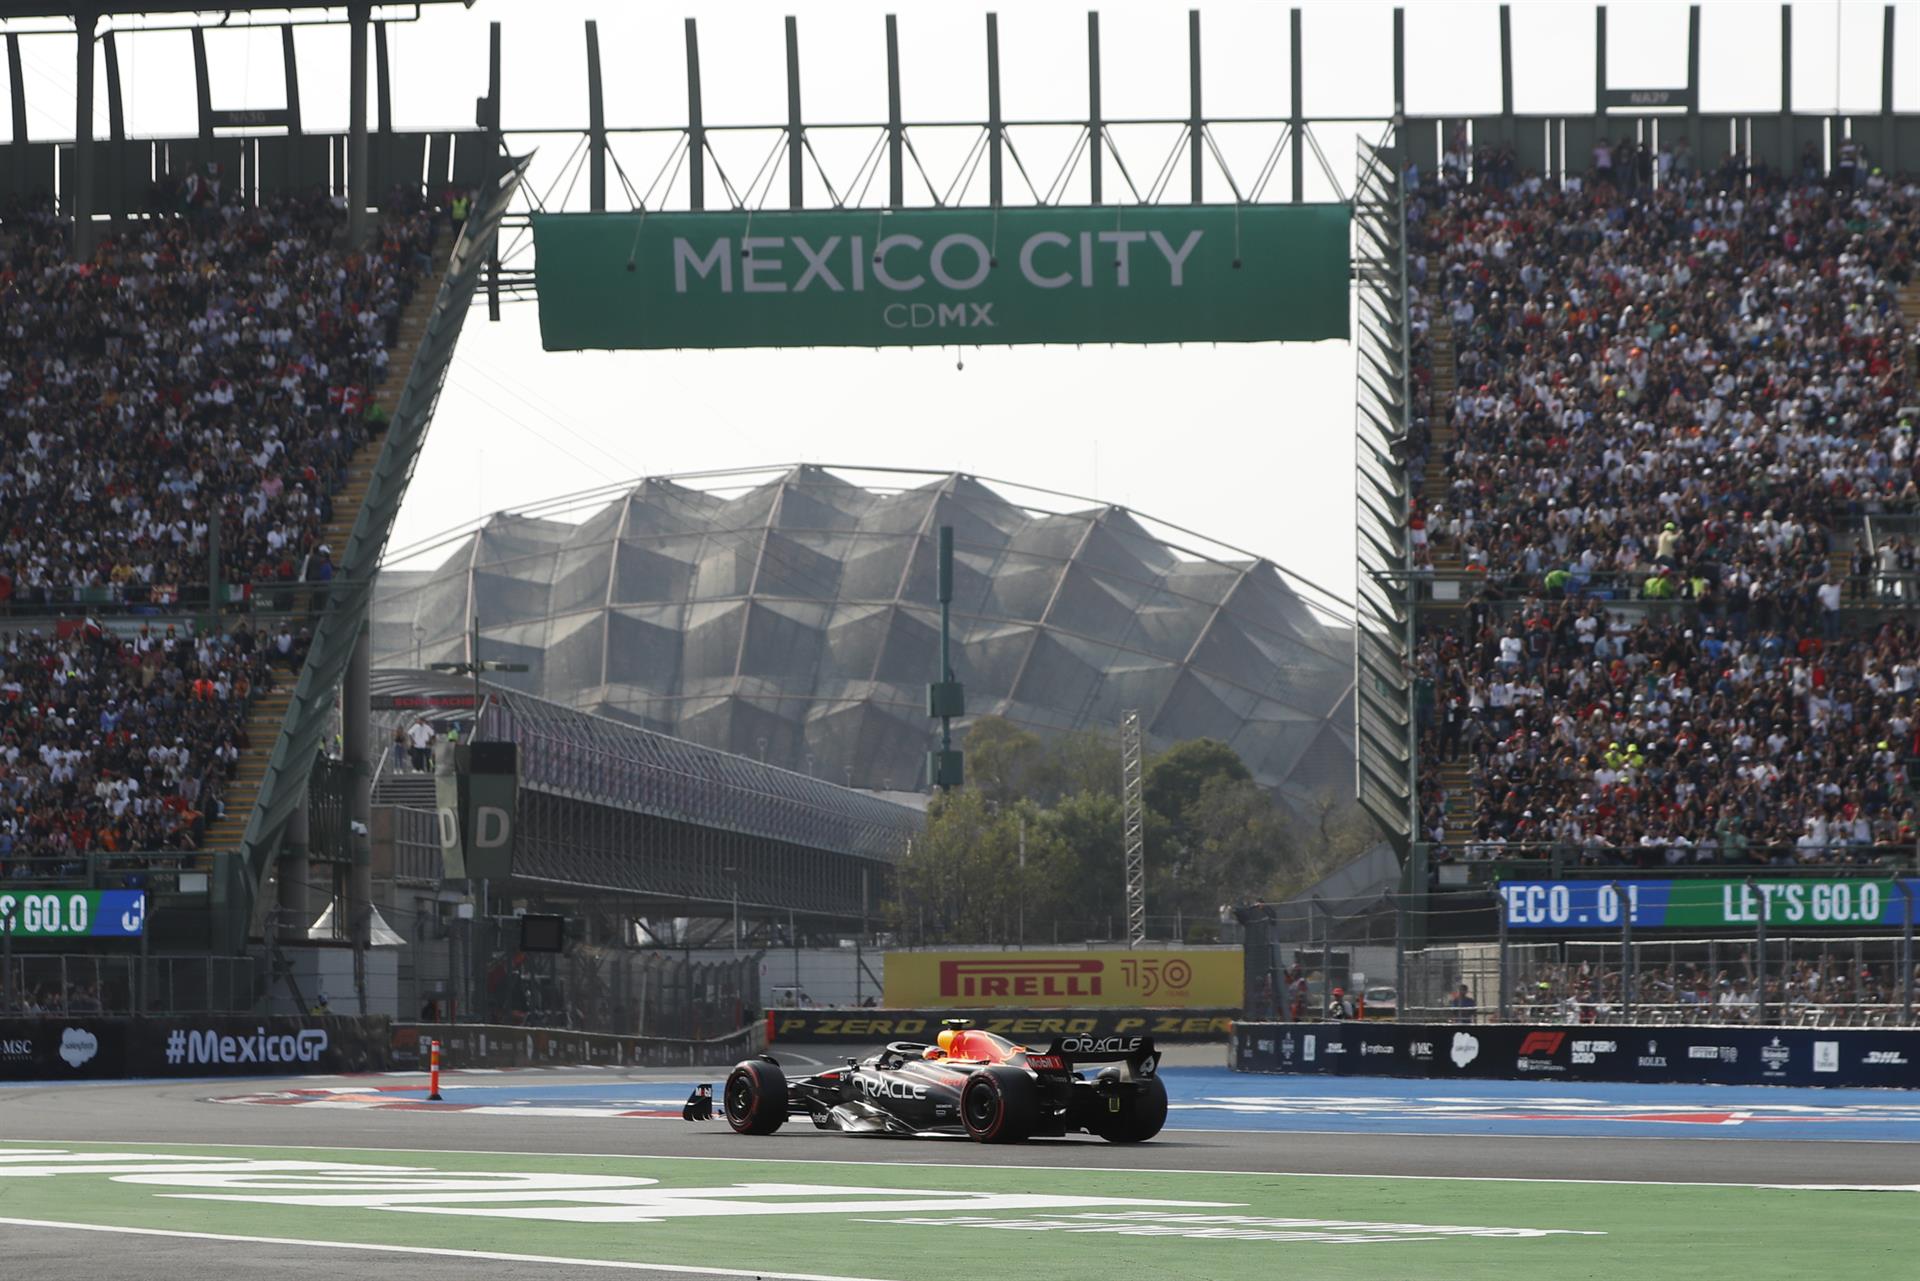 Develan póster oficial para el Gran Premio de México 2023, conócelo